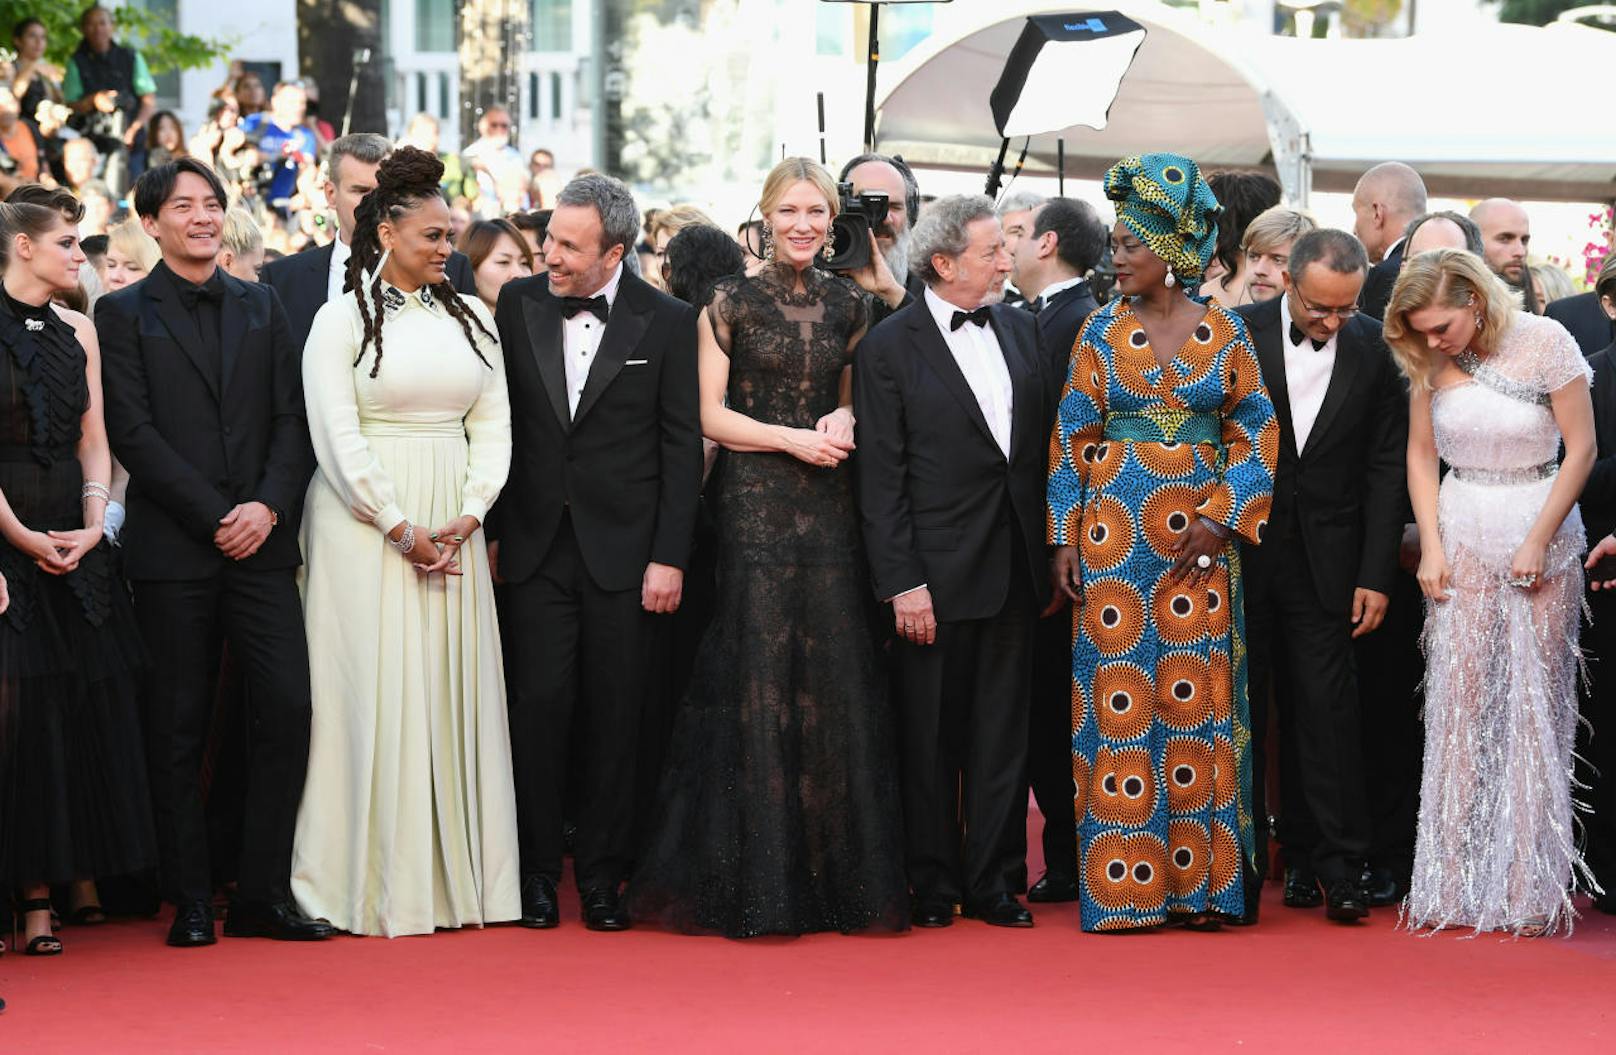 Eröffnet wurde der Red Carpet aber von der Jury des diesjährigen Filmfestspiele in Cannes: Kristen Stewart, Chang Chen, Ava DuVemay, Denis Villeneuve, Cate Blanchett, Robert Guediguian, Khadja Nin, Andrey Zvyagintsey und Lea Seydoux.